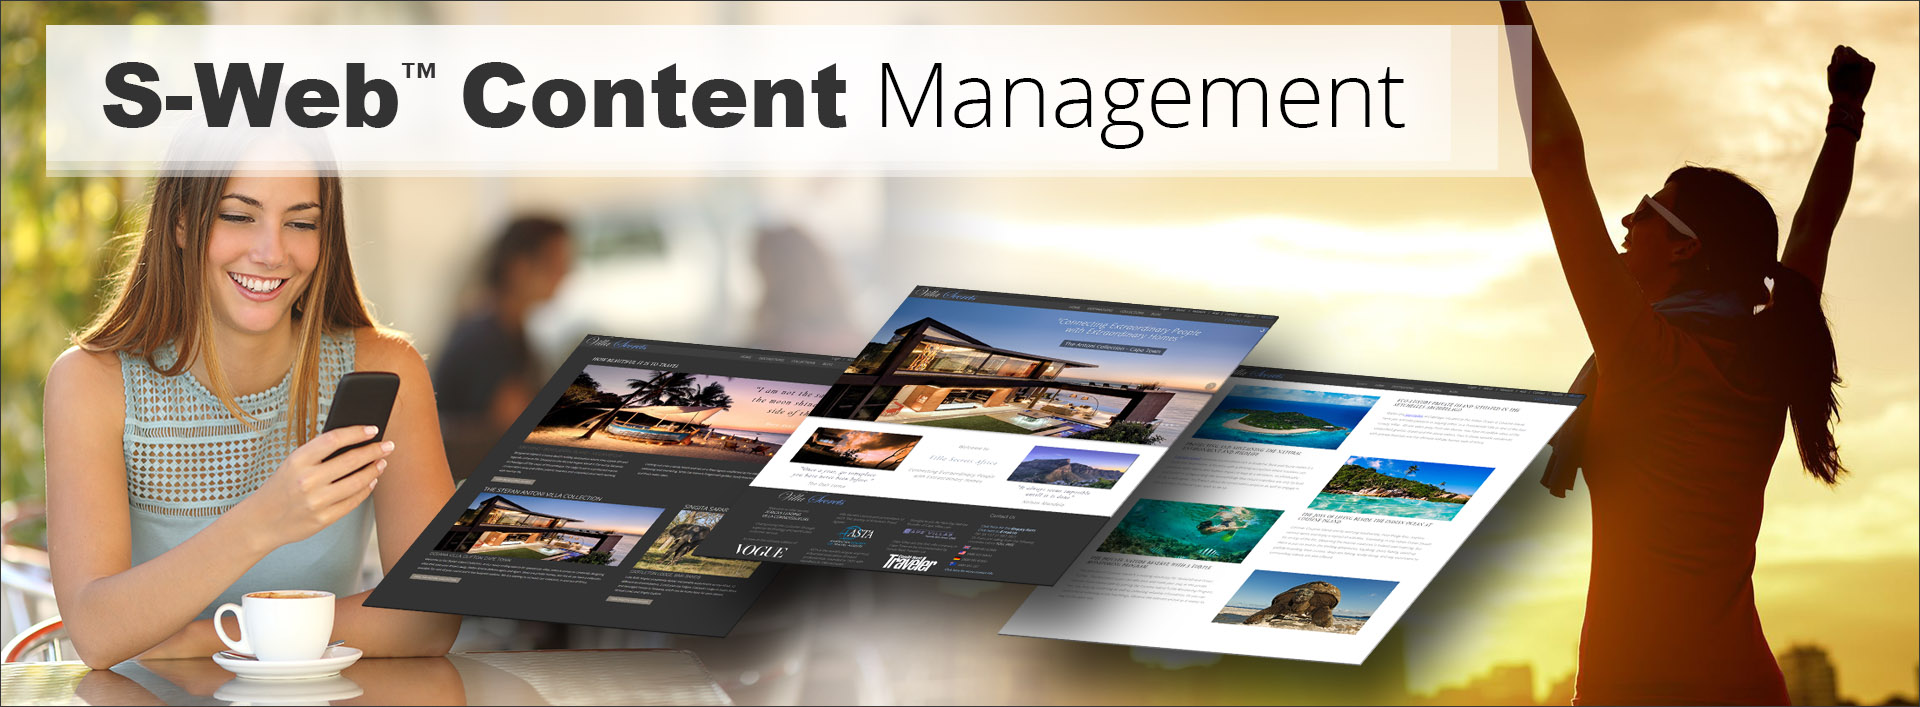 S-Web Content Management